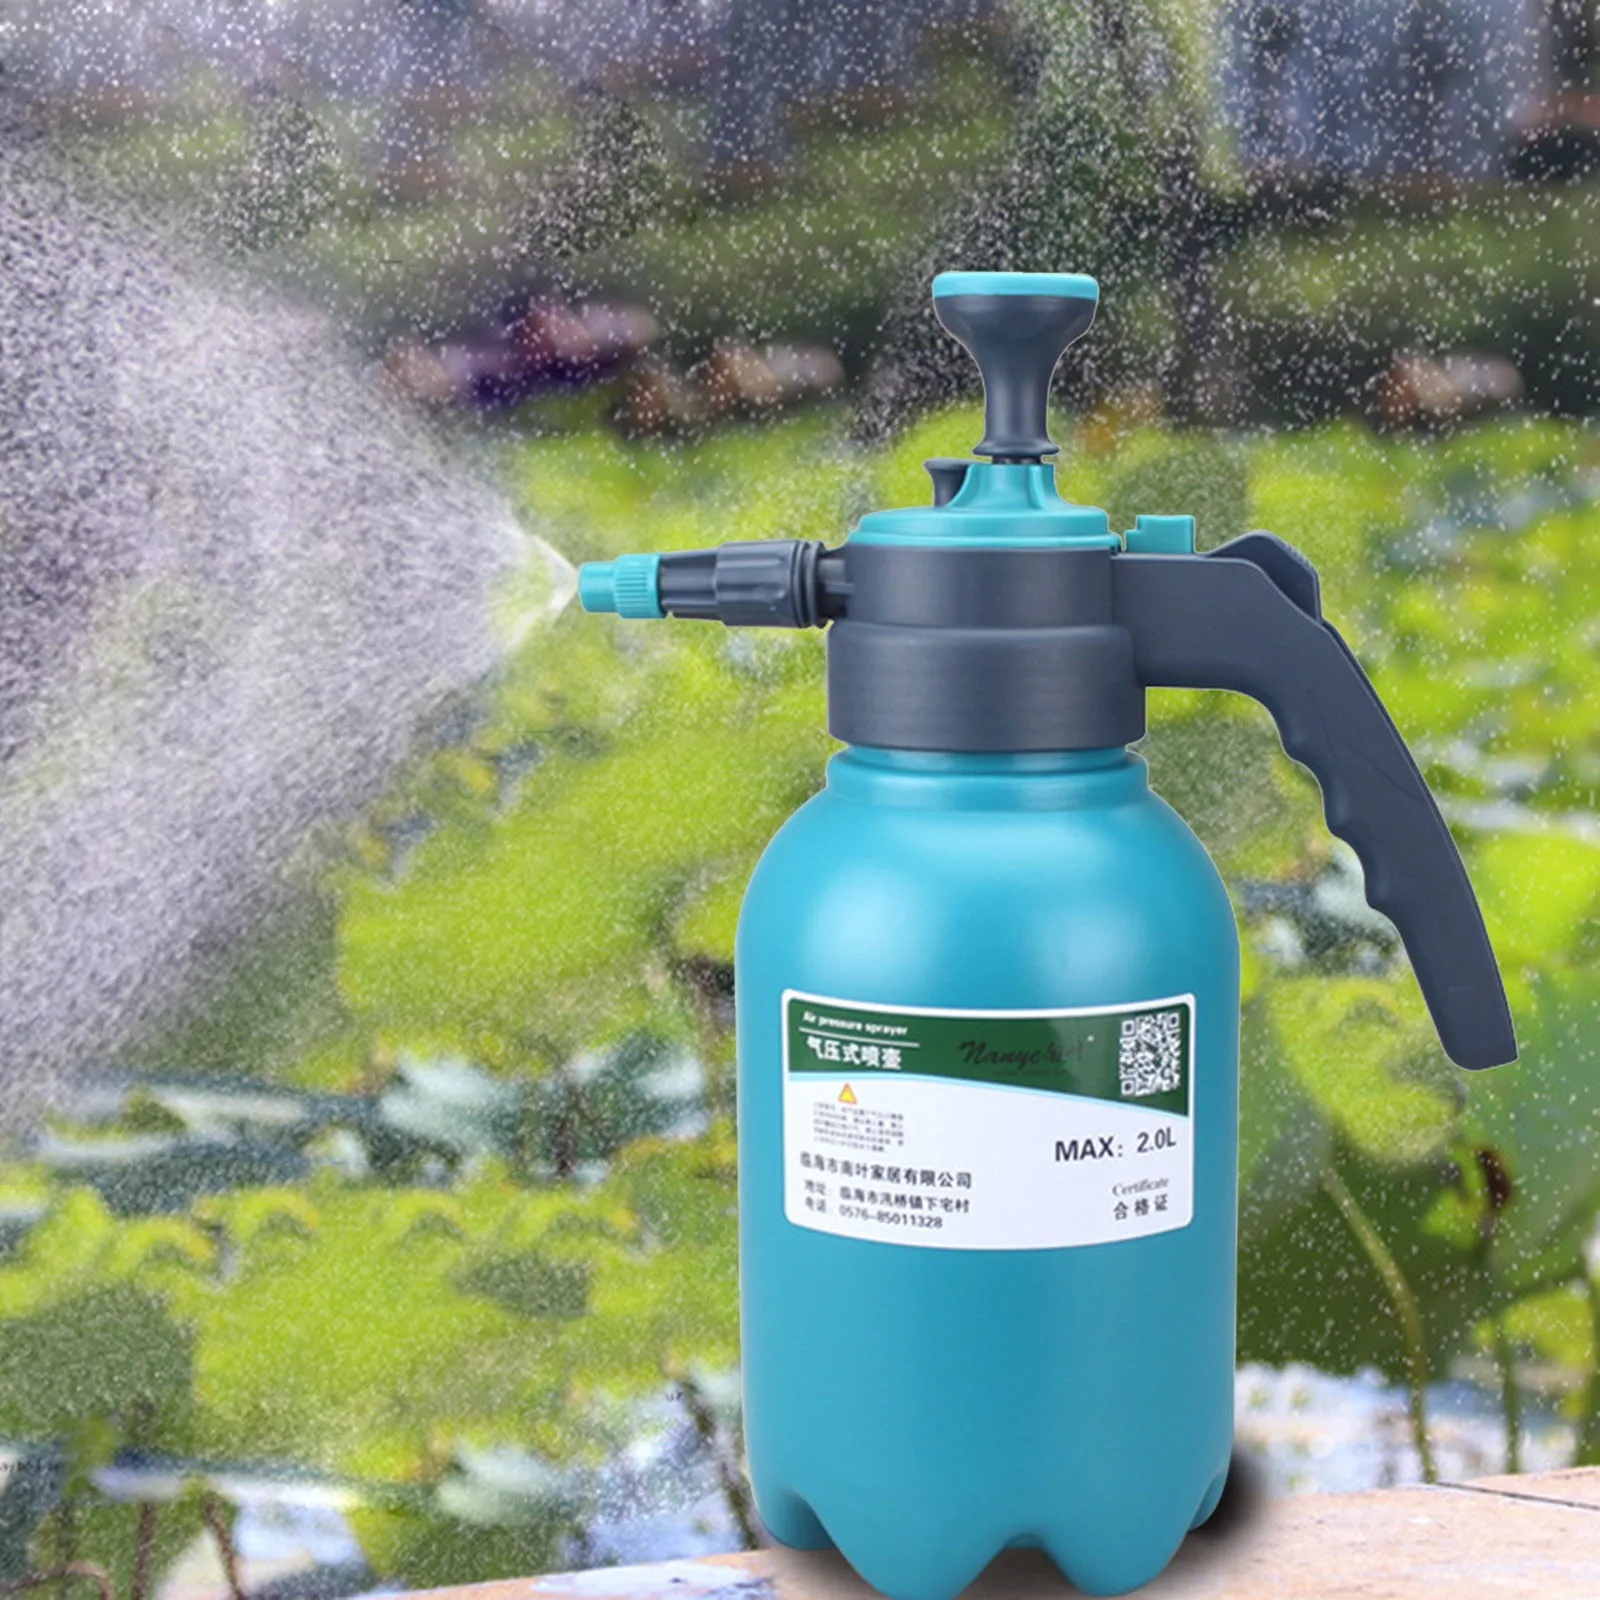 

Hand Pressure Disinfection Water Sprayers Spray Bottle Air Compression Pump Garden Sprayer Sprinkler Gardening Watering Can 2L